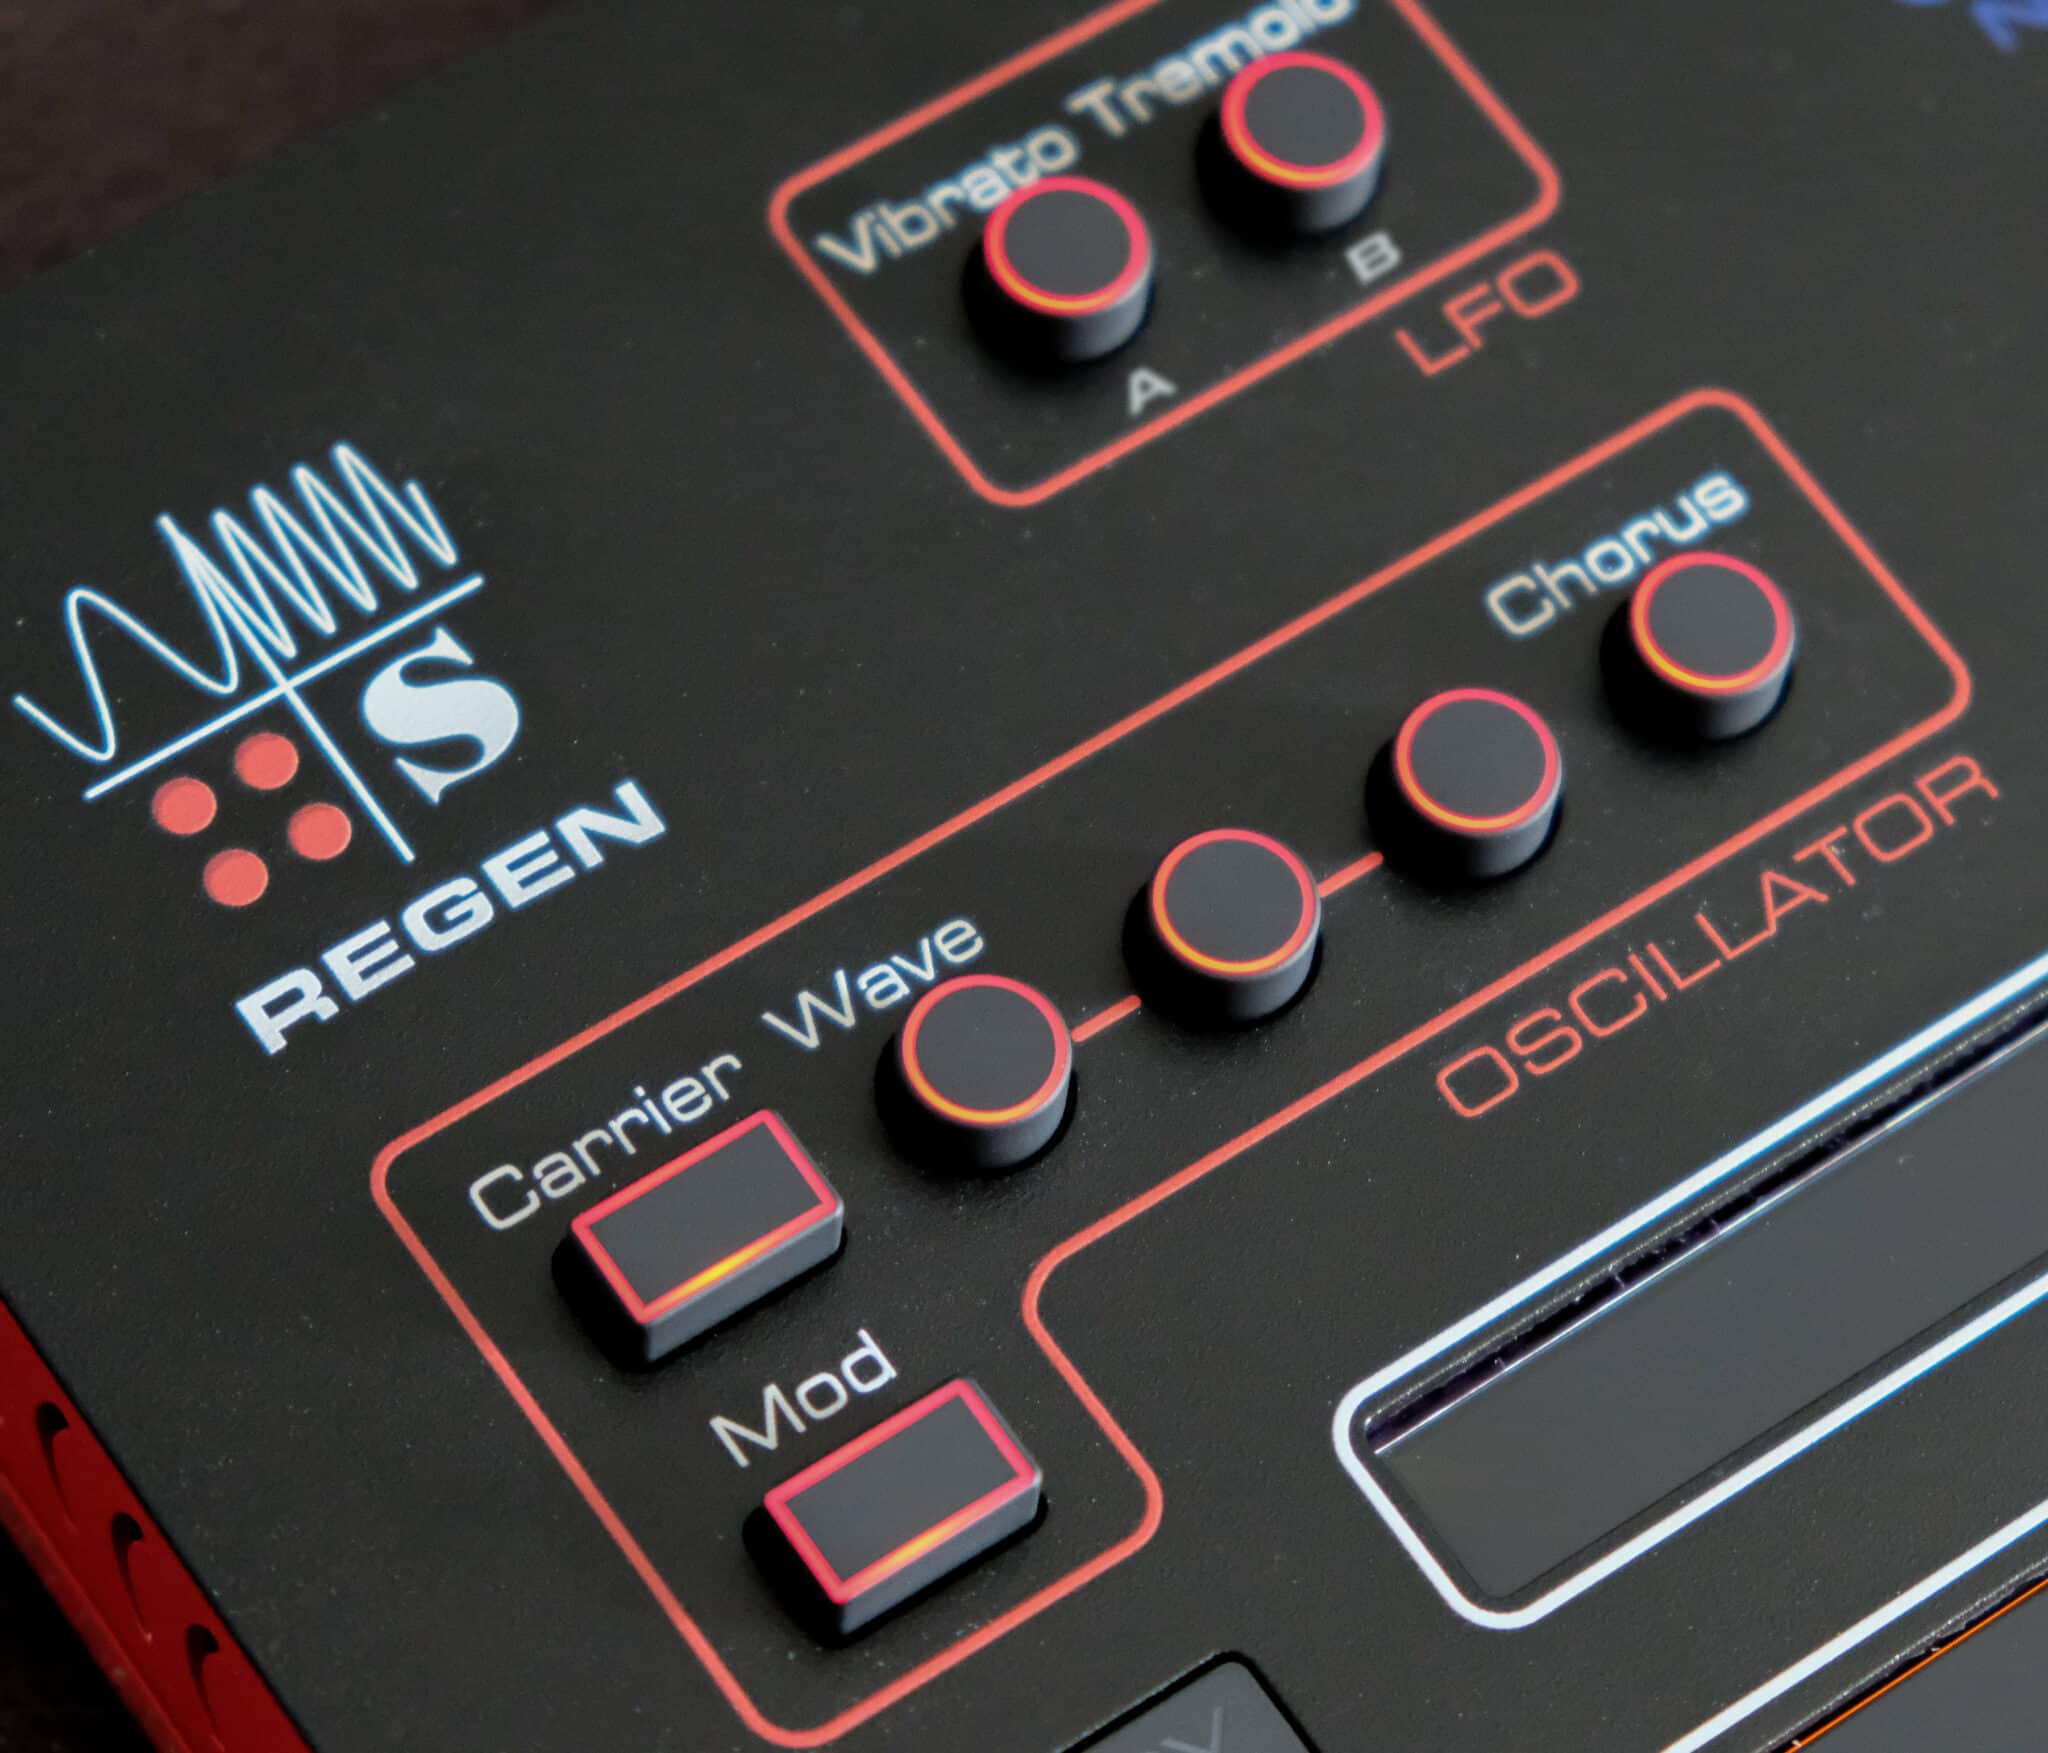 Der Oszillator beherrscht etliche Syntheseverfahren sowie Sampling und wird um einen FM-Modulator ergänzt.